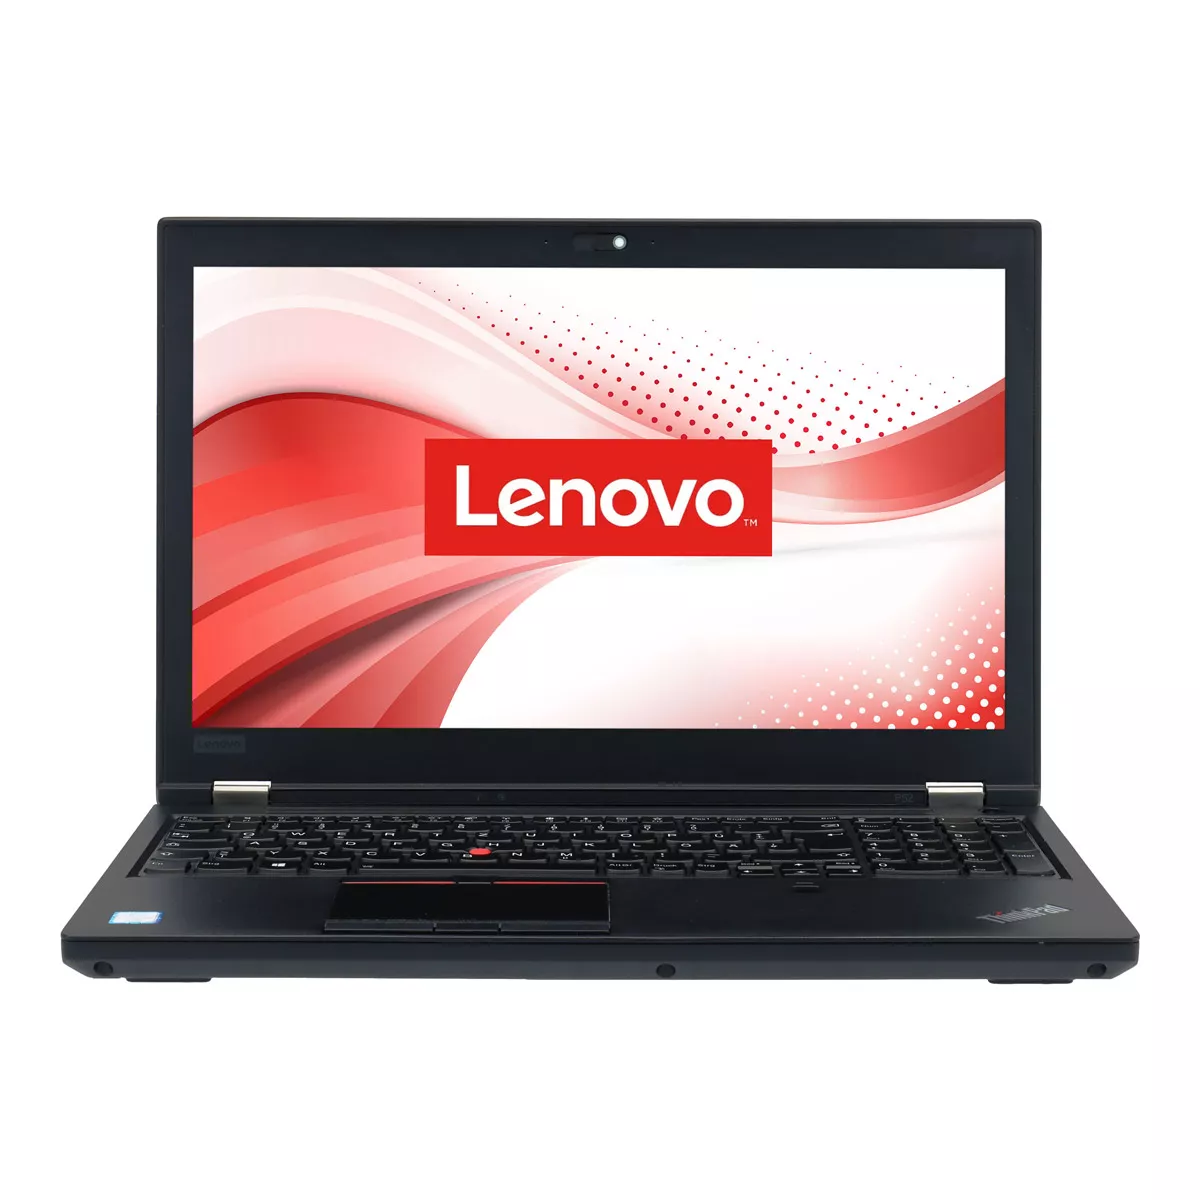 Lenovo ThinkPad P52 Core i7 8750H Full-HD nVidia Quadro P1000M 500 GB M.2 SSD Webcam B